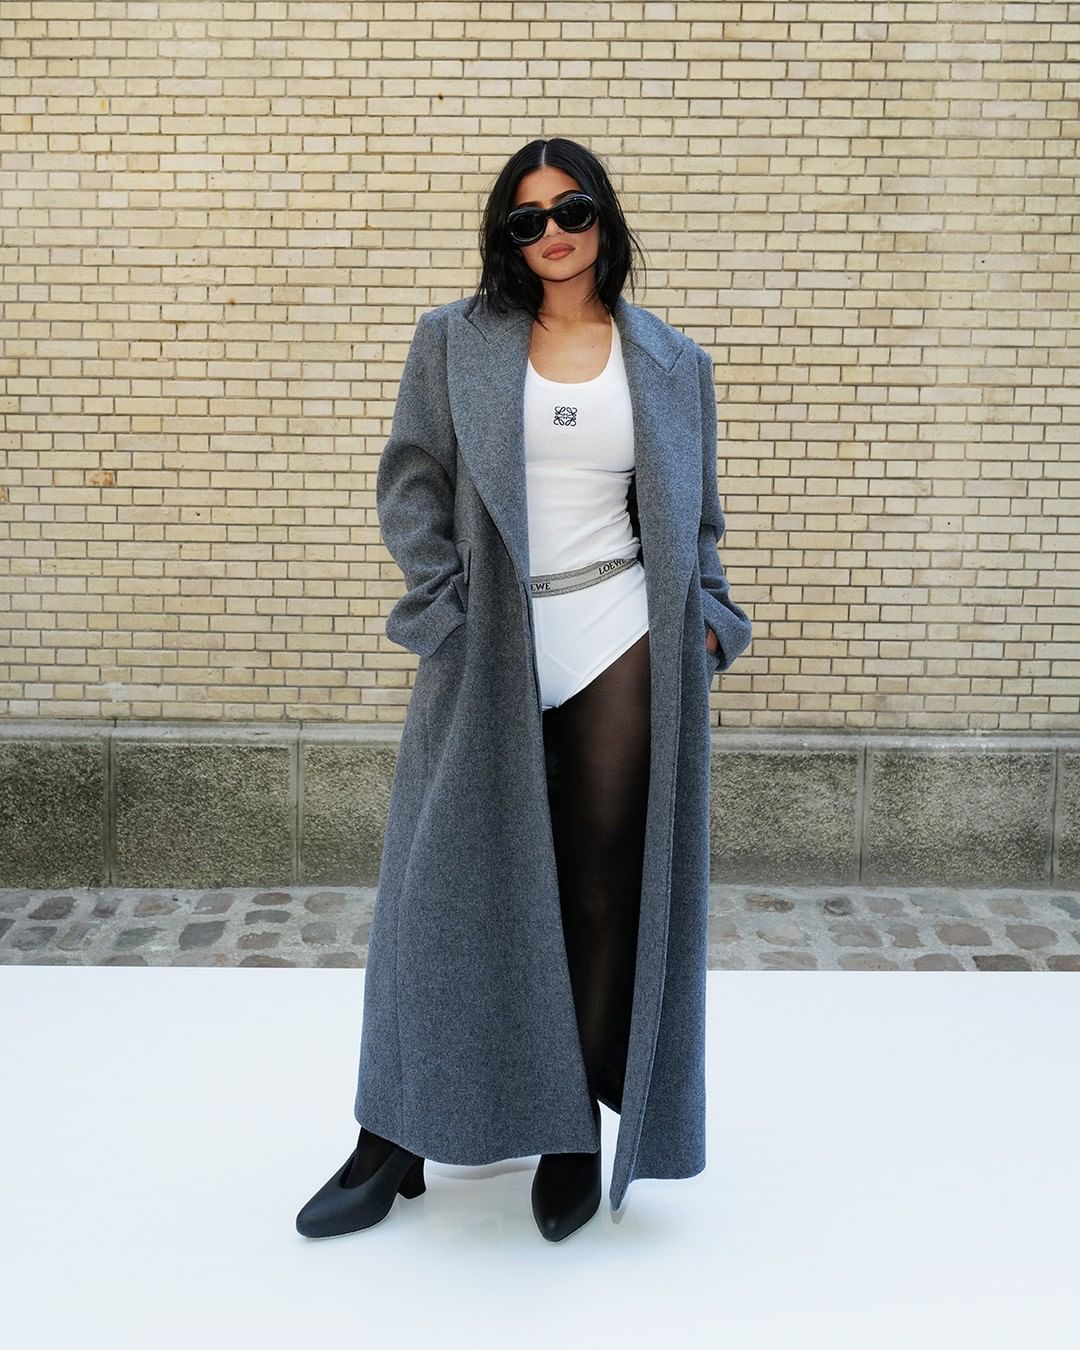 Нечего скрывать: Кайли Дженнер в нижнем белье на Неделе моды в Париже